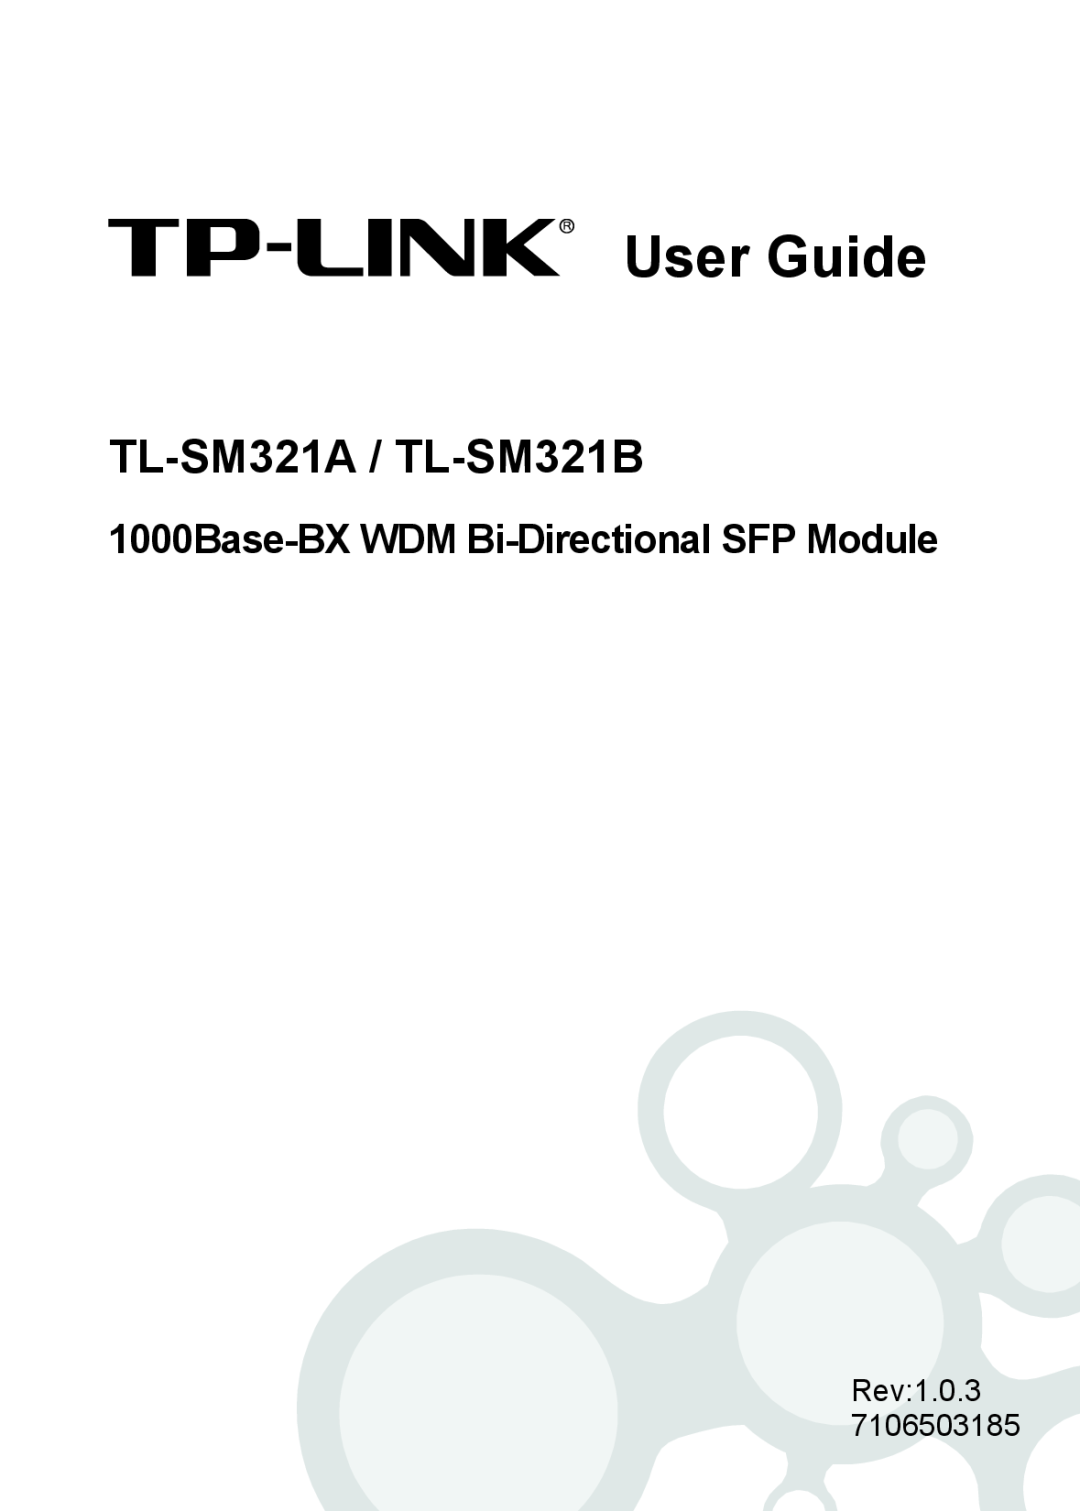 TP-Link manual 1000Base-BX WDM Bi-Directional SFP Module, User Guide, TL-SM321A / TL-SM321B 